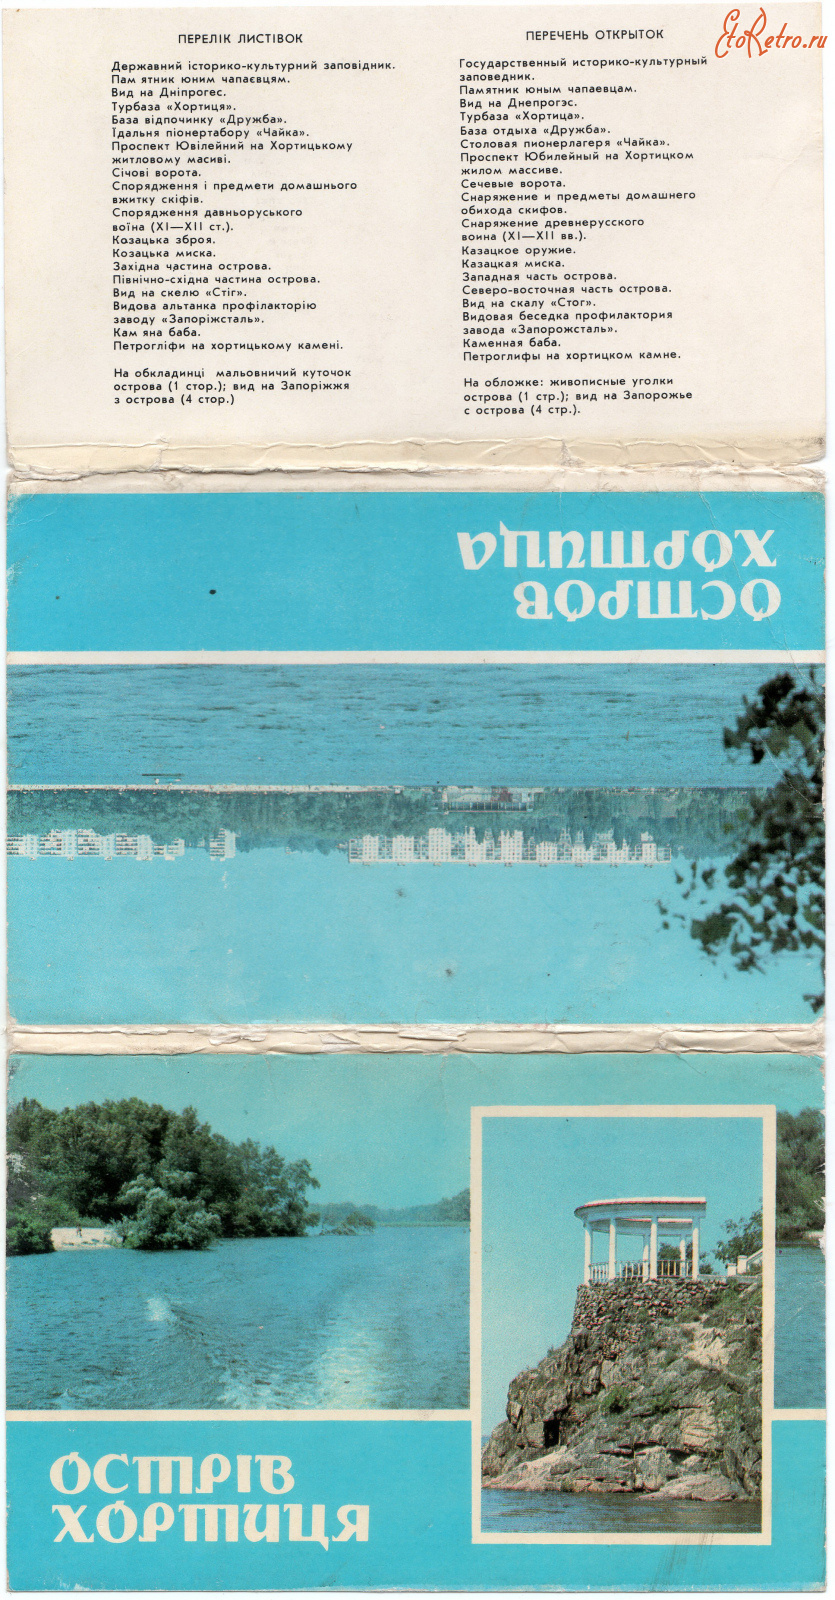 Запорожье - Набор открыток Запорожье 1985г.